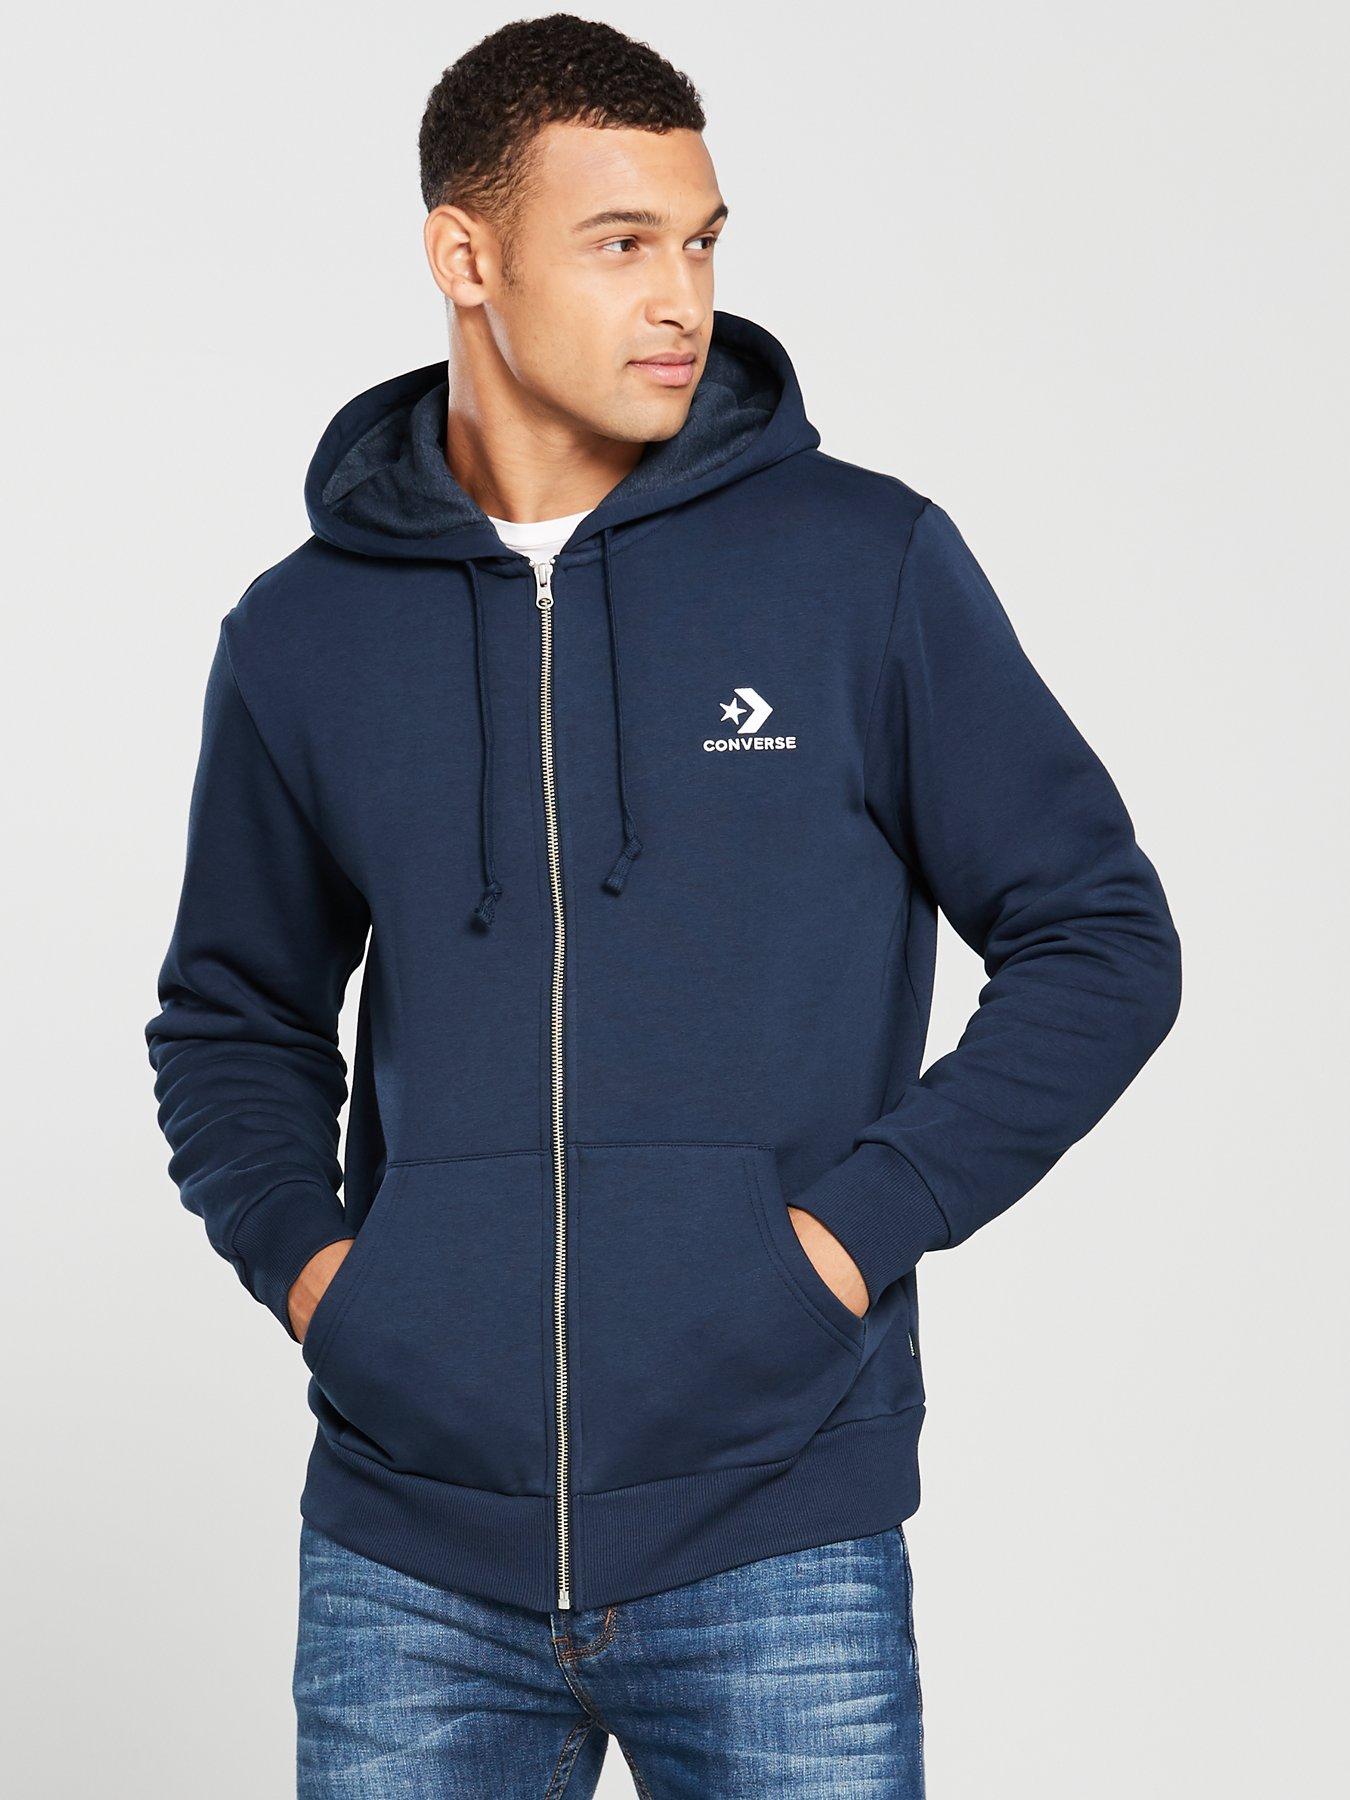 converse men's zip hoodie